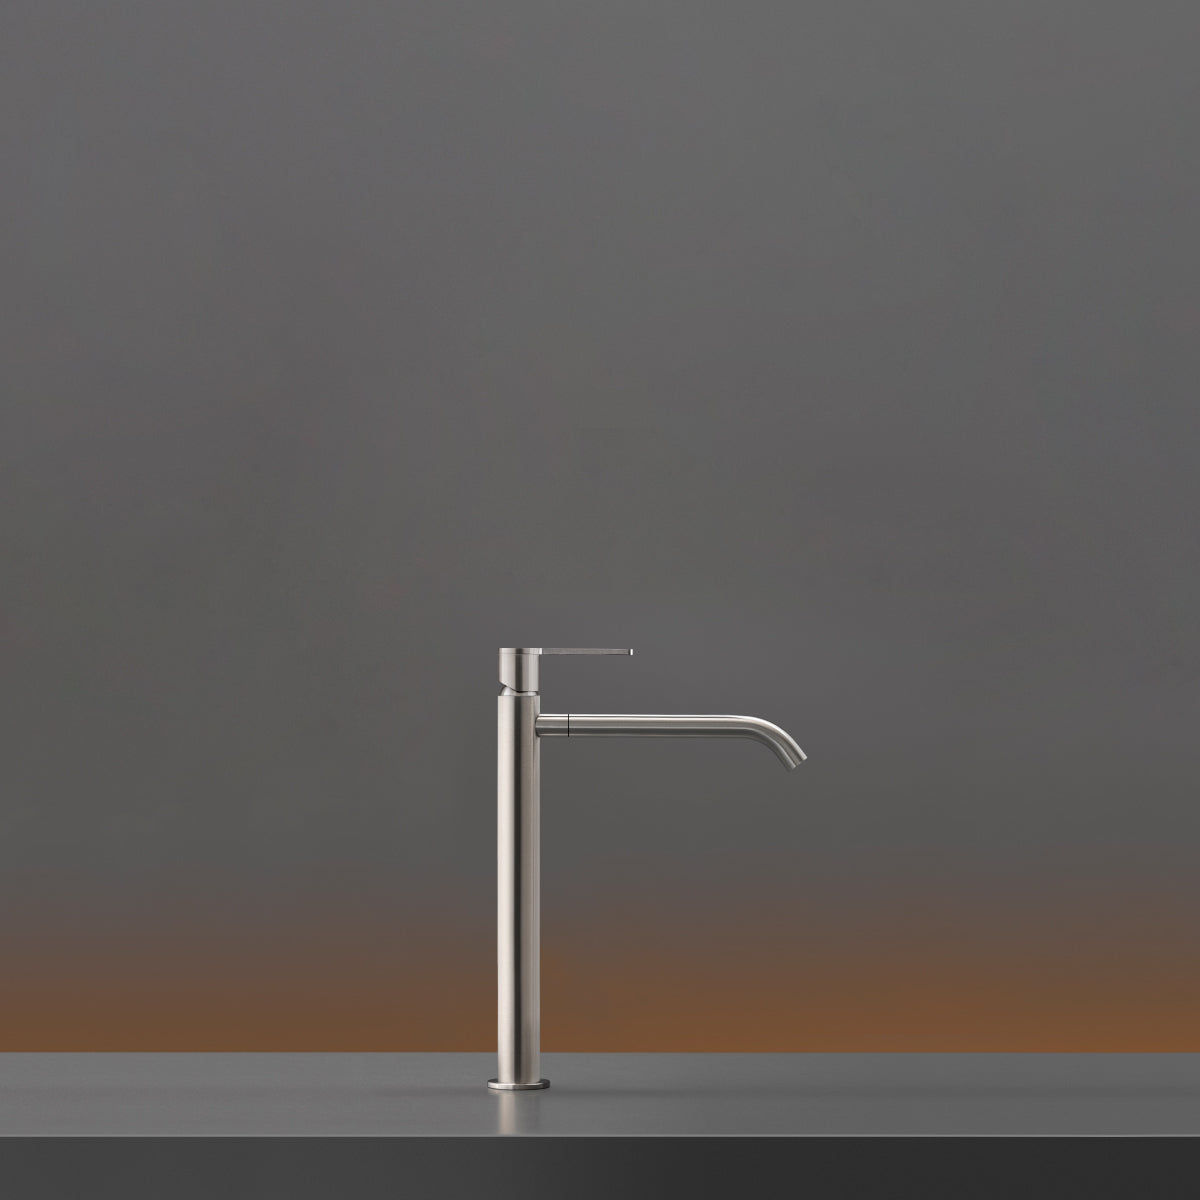 Ceadesign INNOVO - Miscelatore monoforo per lavabo da appoggio H. 315 mm con bocca di erogazione girevole per getto a zampillo, apertura dall'acqua fredda - INV05